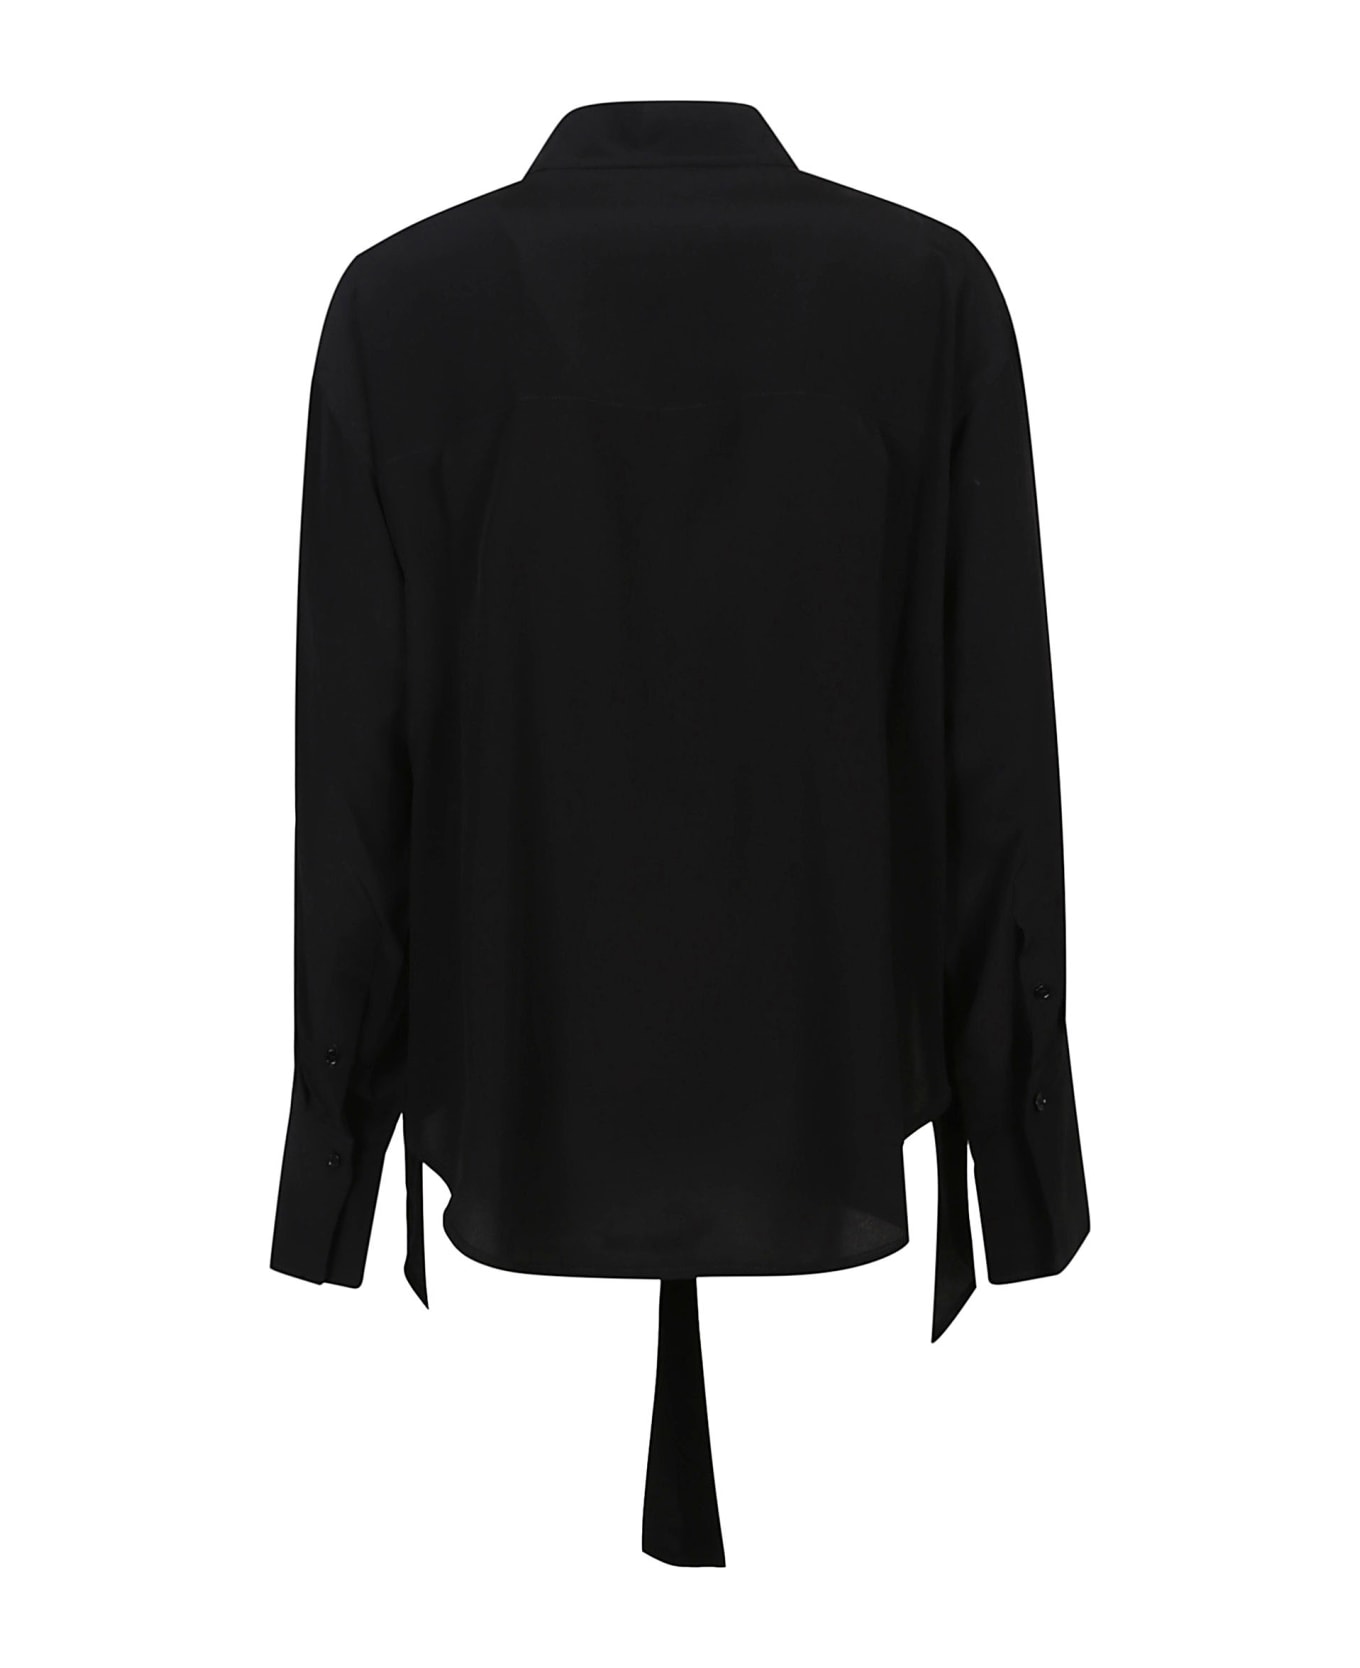 Victoria Beckham Wrap Front Blouse - Black シャツ